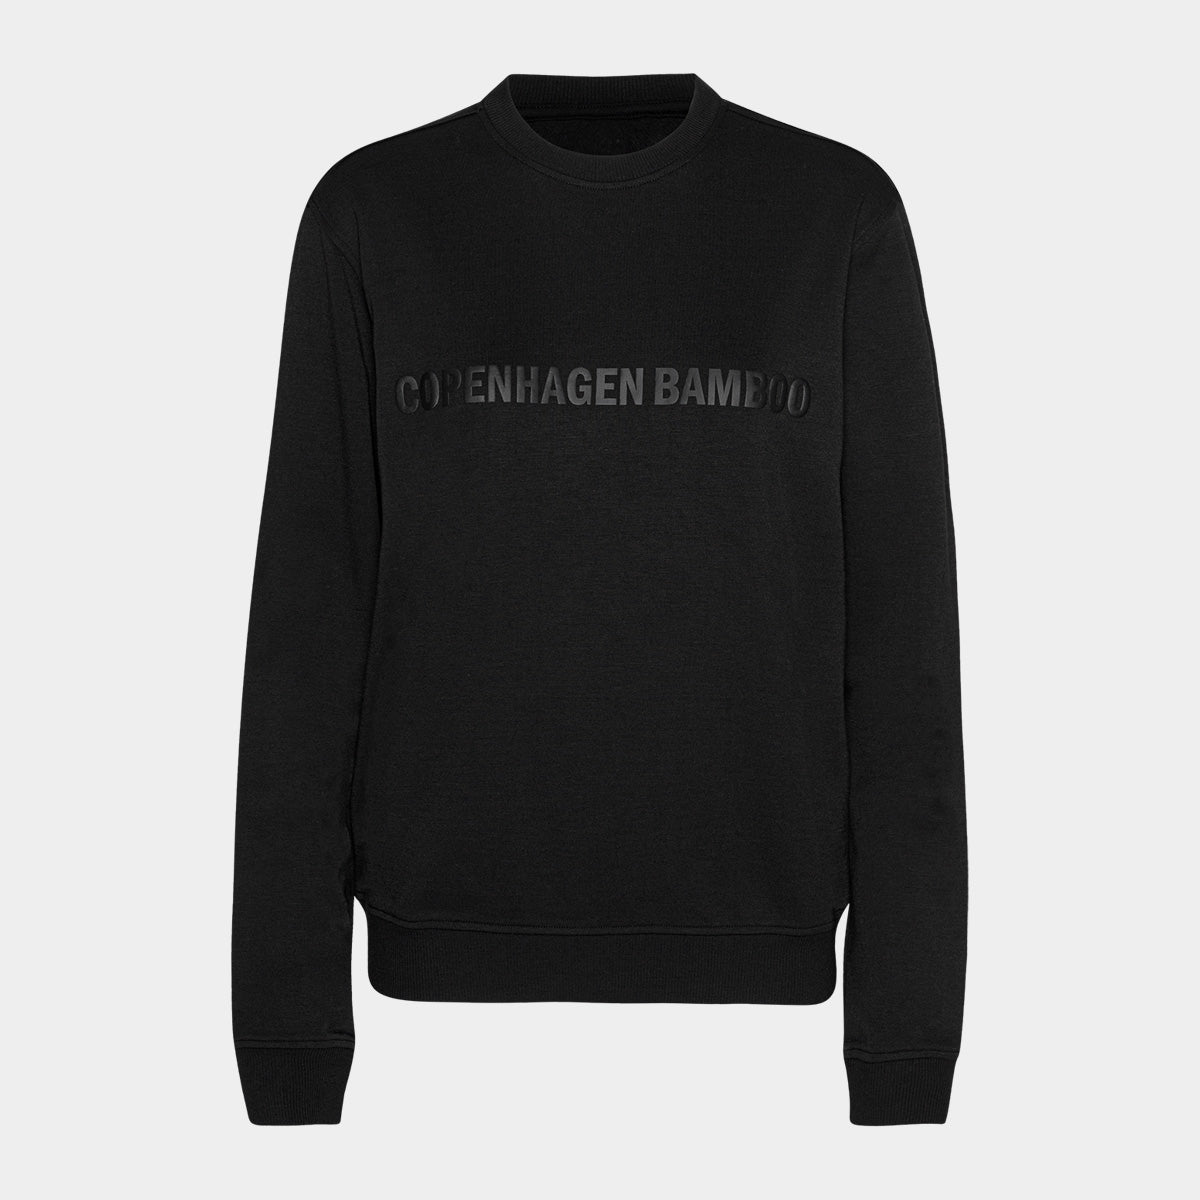 Se Sort bambus sweatshirt til dame med logo fra Copenhagen Bamboo, XXL hos Bambustøj.dk